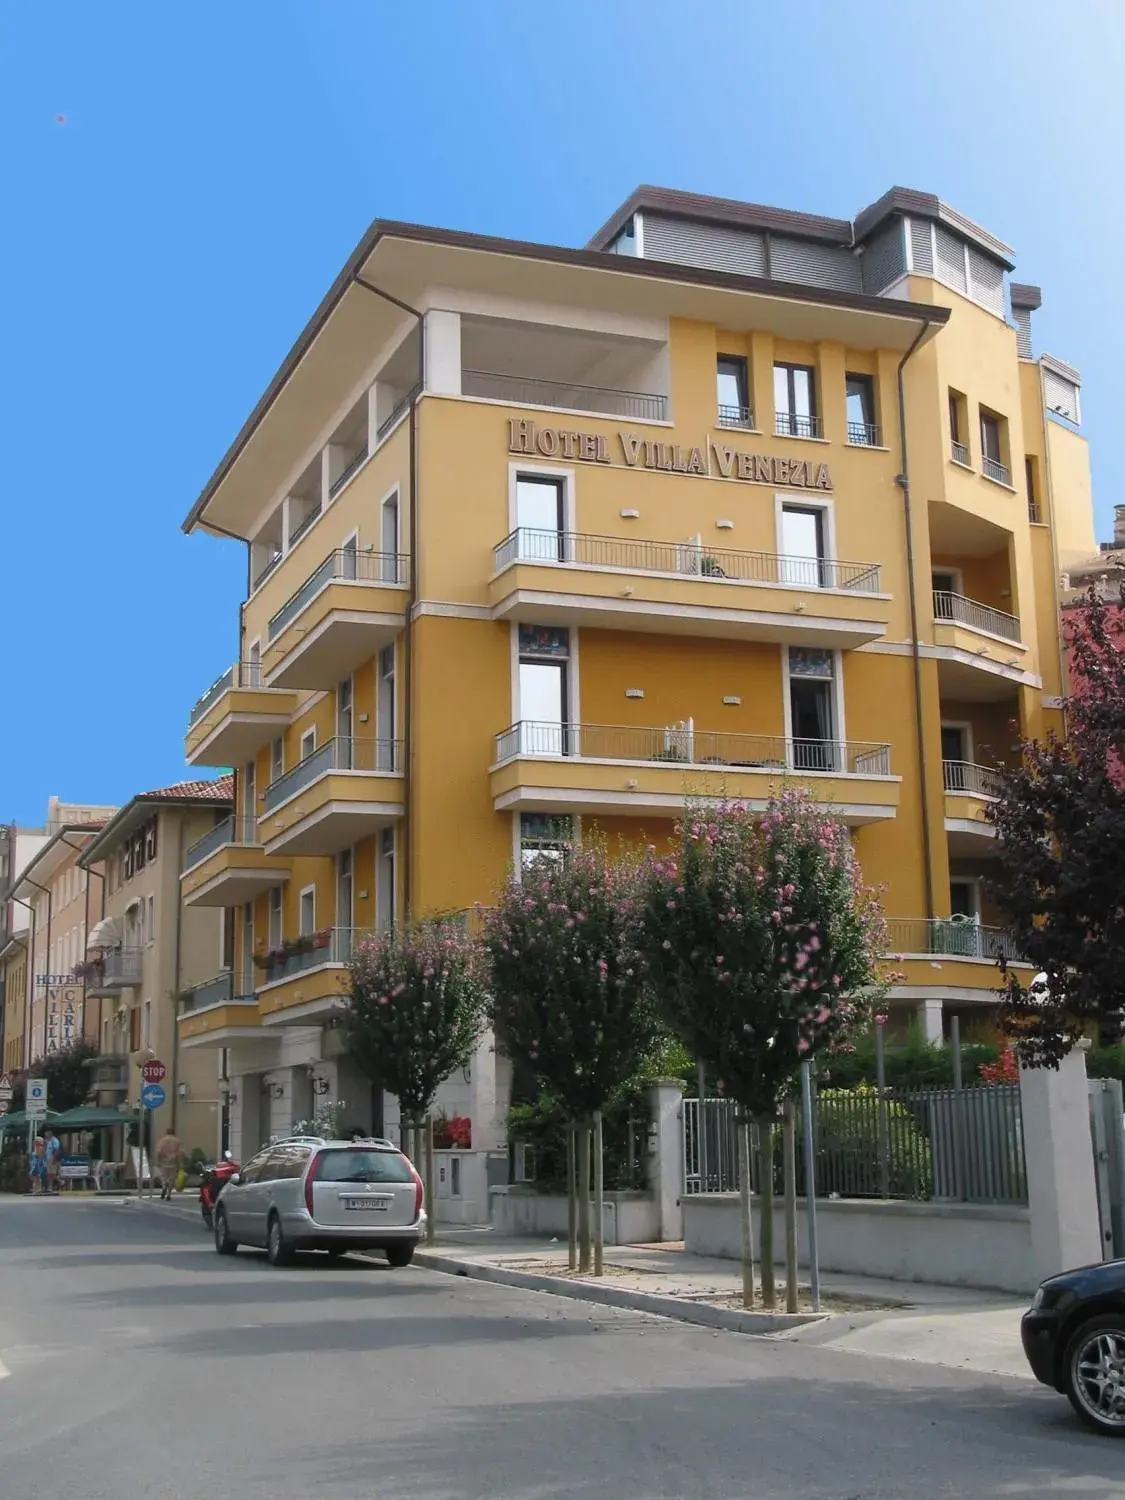 Facade/entrance, Property Building in Hotel Villa Venezia